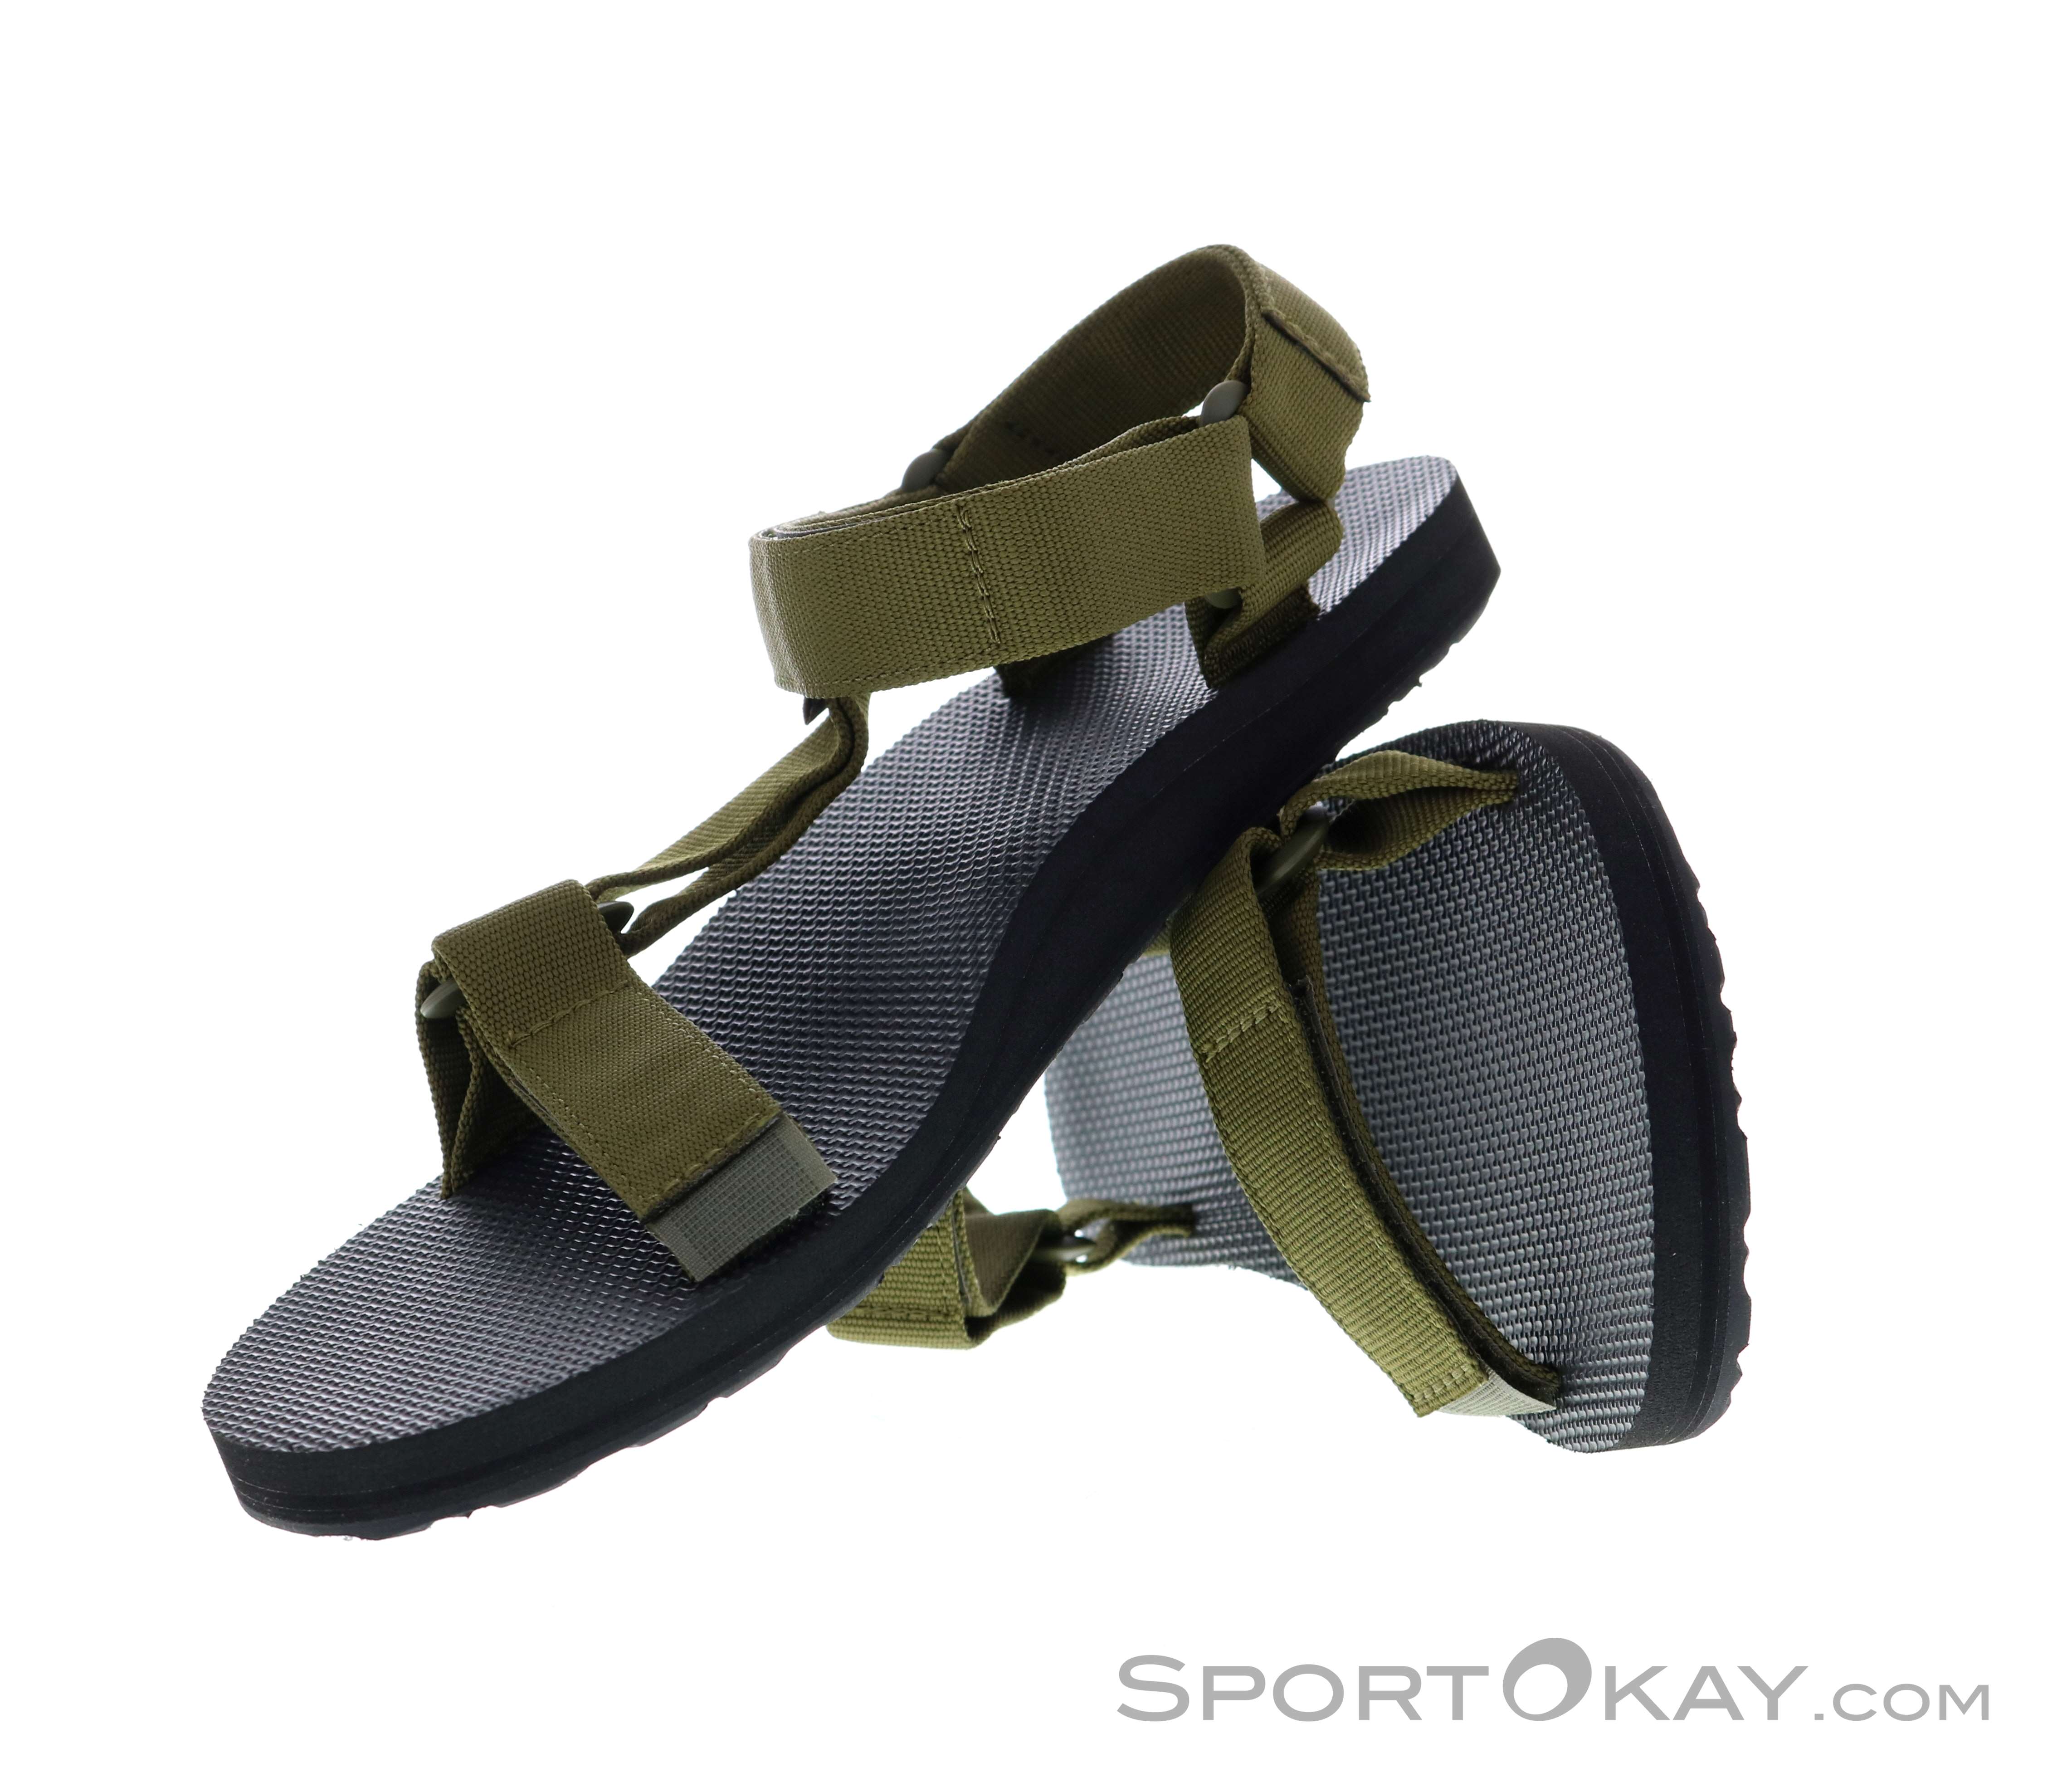 Teva Original Universal Sport Sandals MENS US 13 EU 47 Charcoal/Lime Green NEW